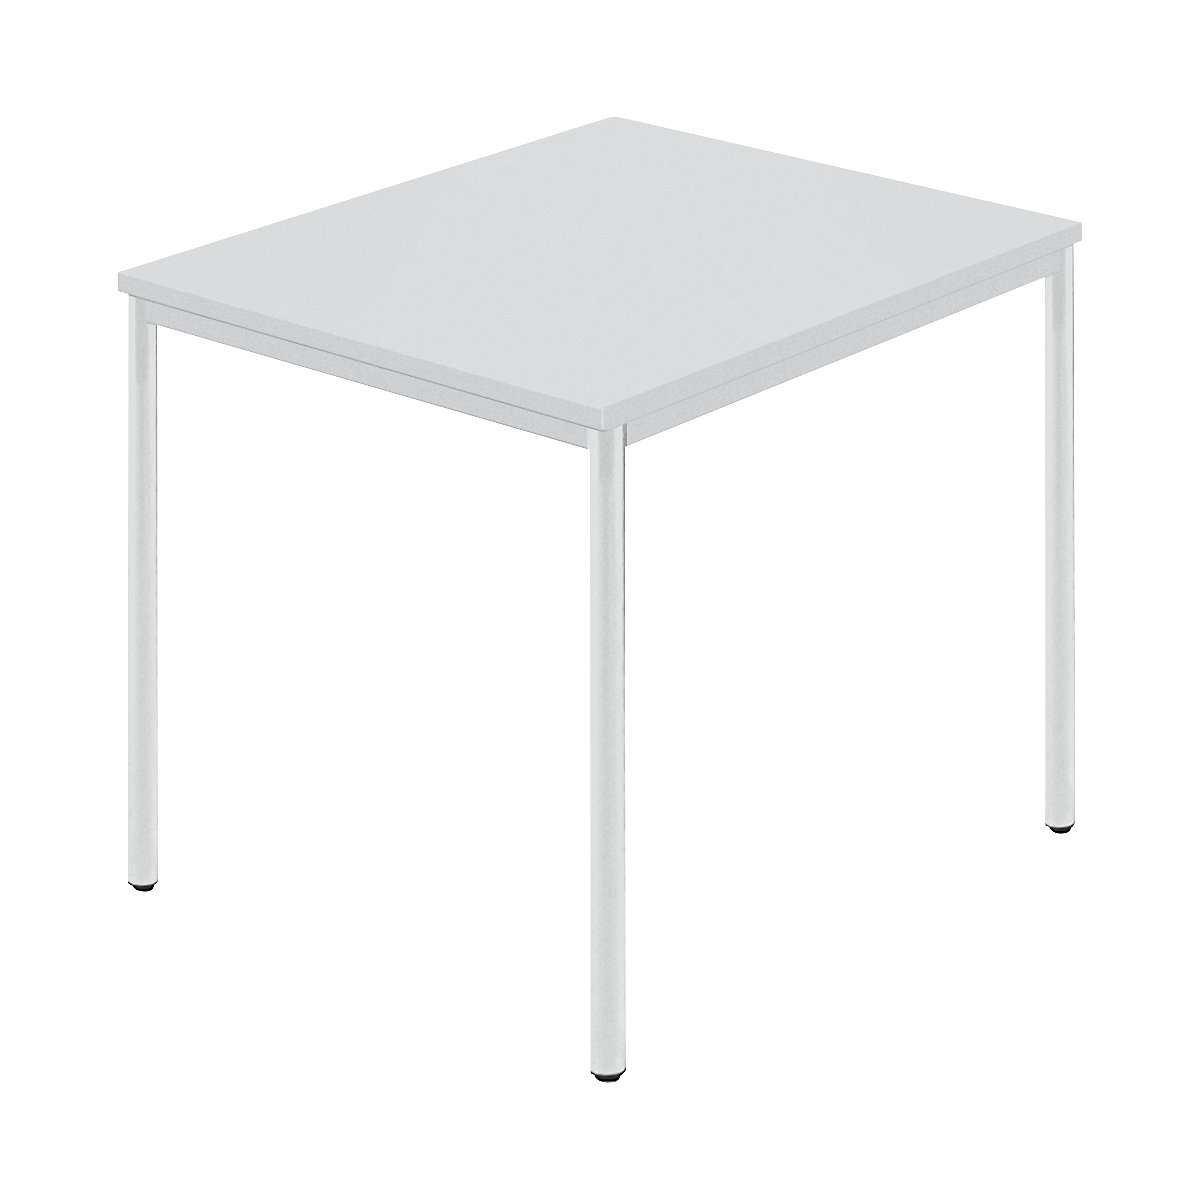 Pravokotna miza, okrogla cev s premazom, ŠxG 800 x 800 mm, siva/siva-5